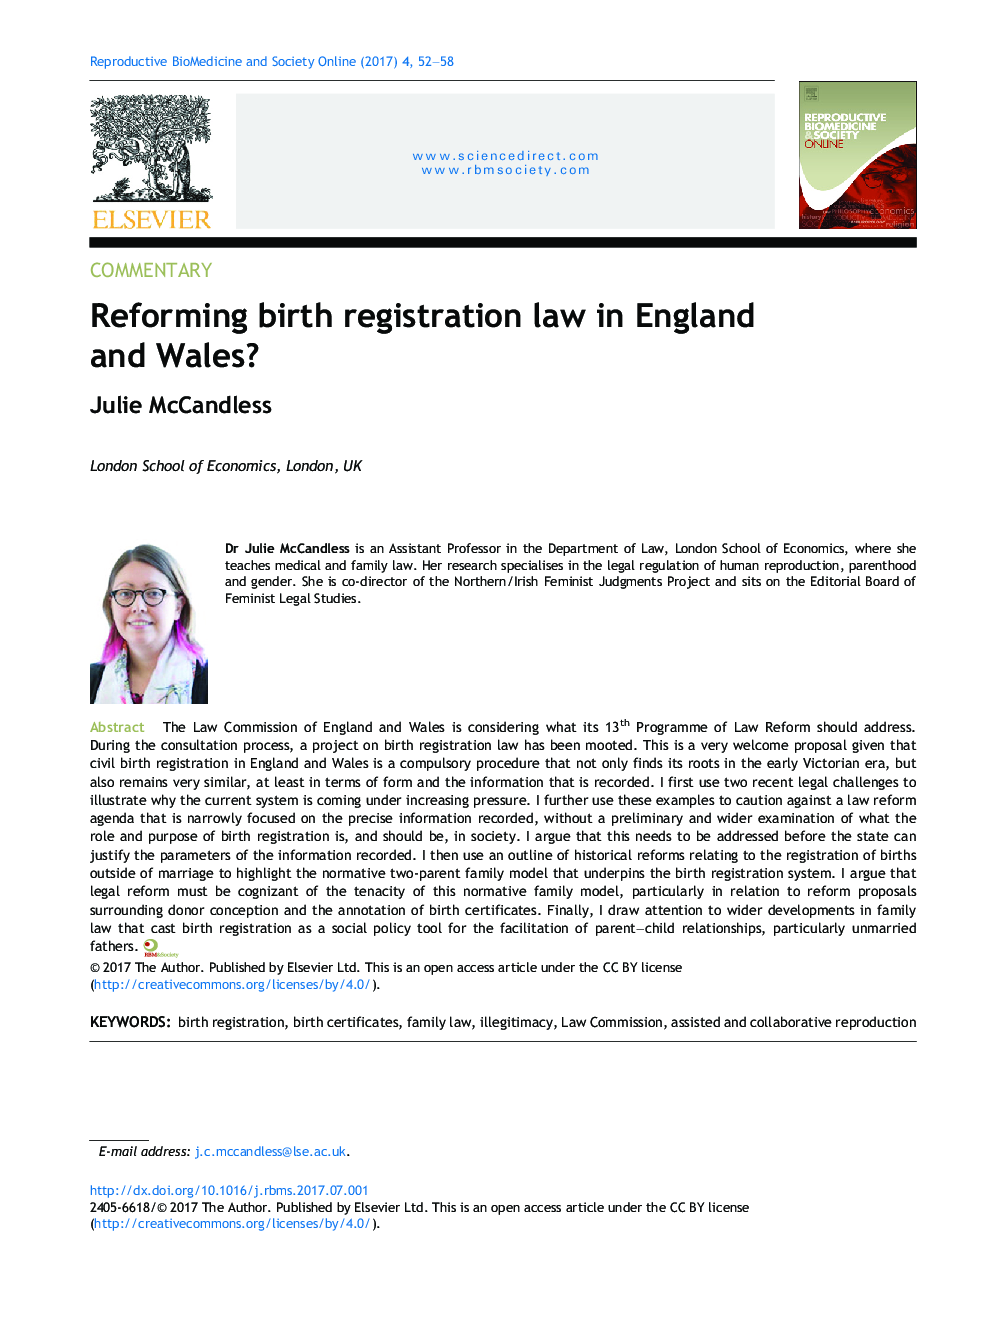 اصلاح قانون ثبت تولد در انگلستان و ولز؟